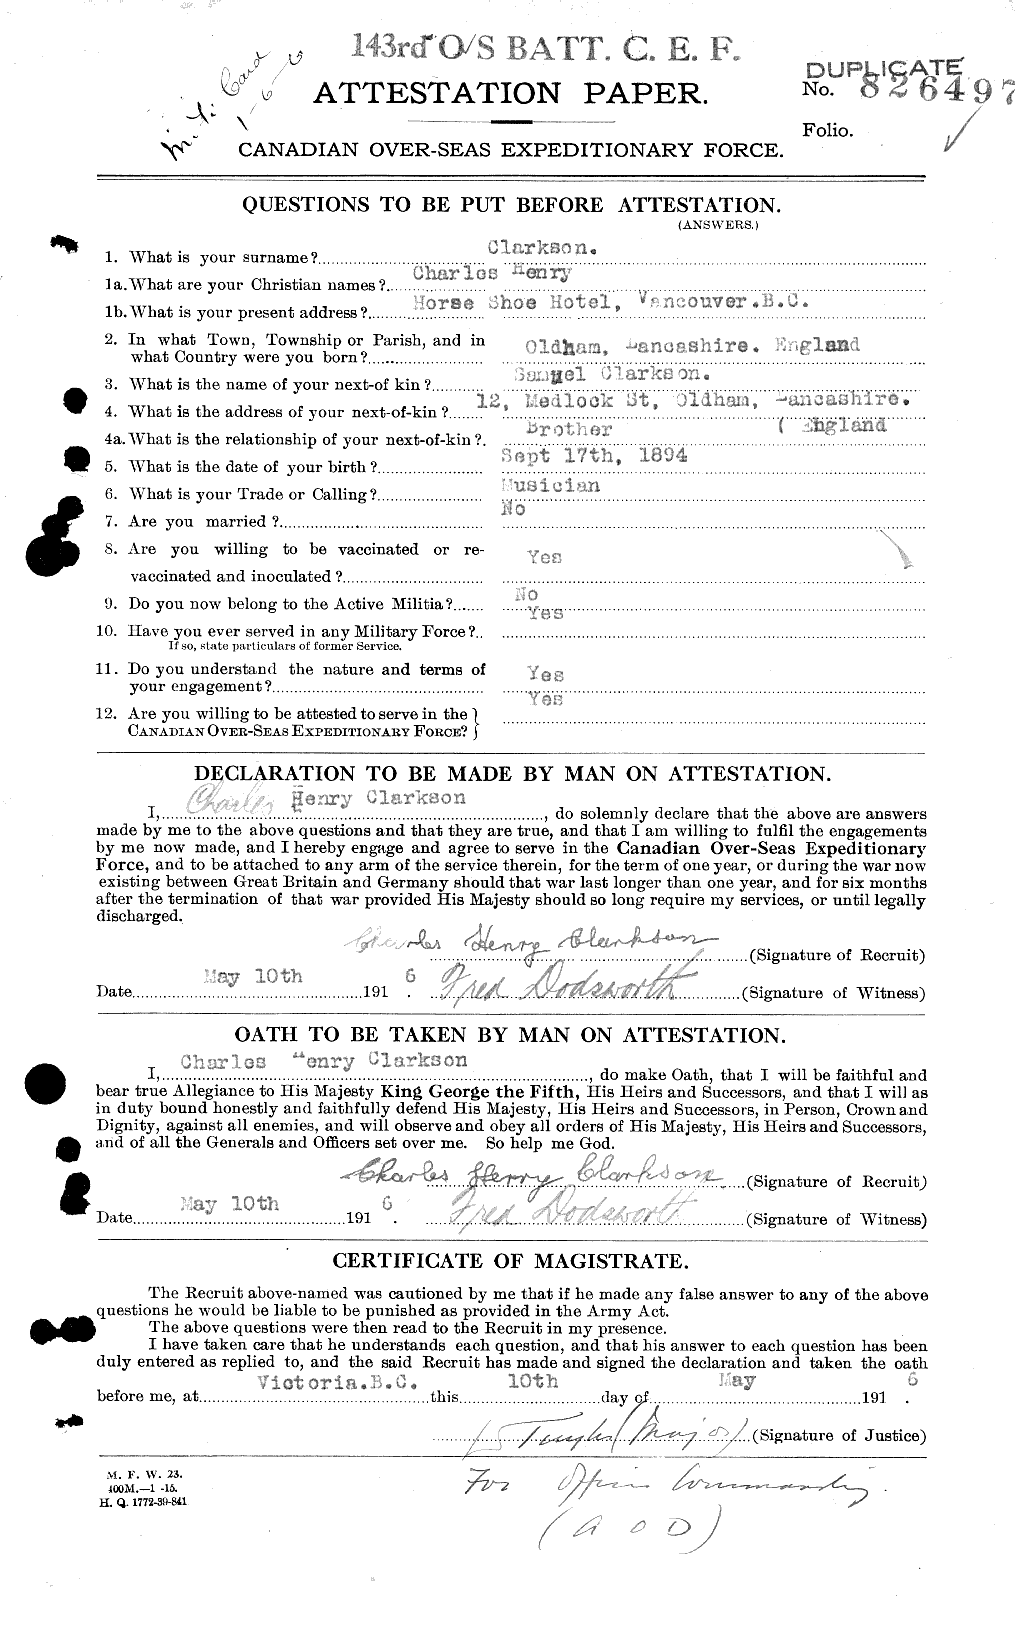 Dossiers du Personnel de la Première Guerre mondiale - CEC 023625a